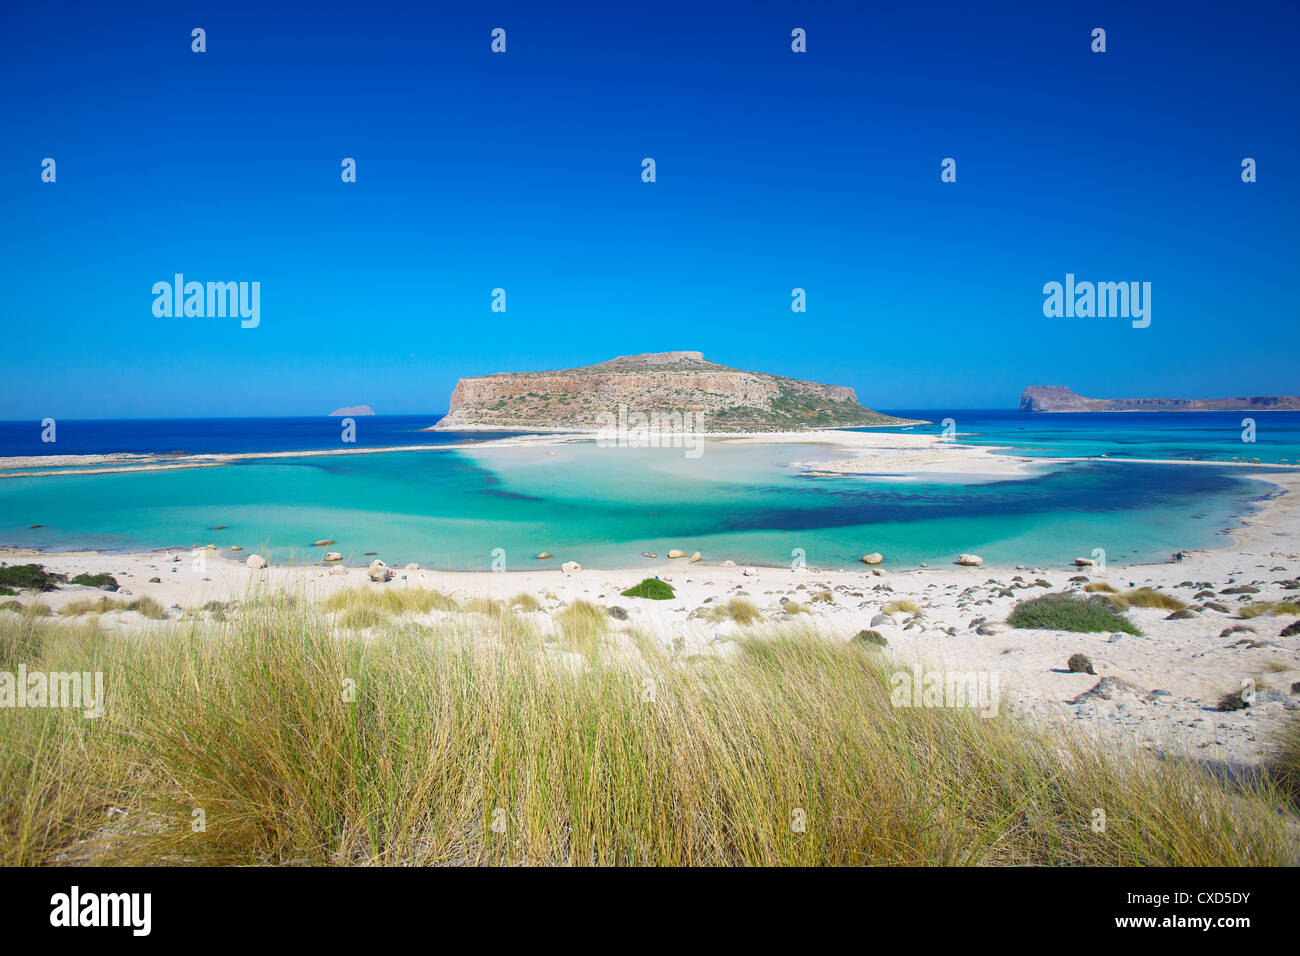 La Bahía de Balos y Gramvousa, Chania, Creta, las Islas Griegas, Grecia, Europa Foto de stock